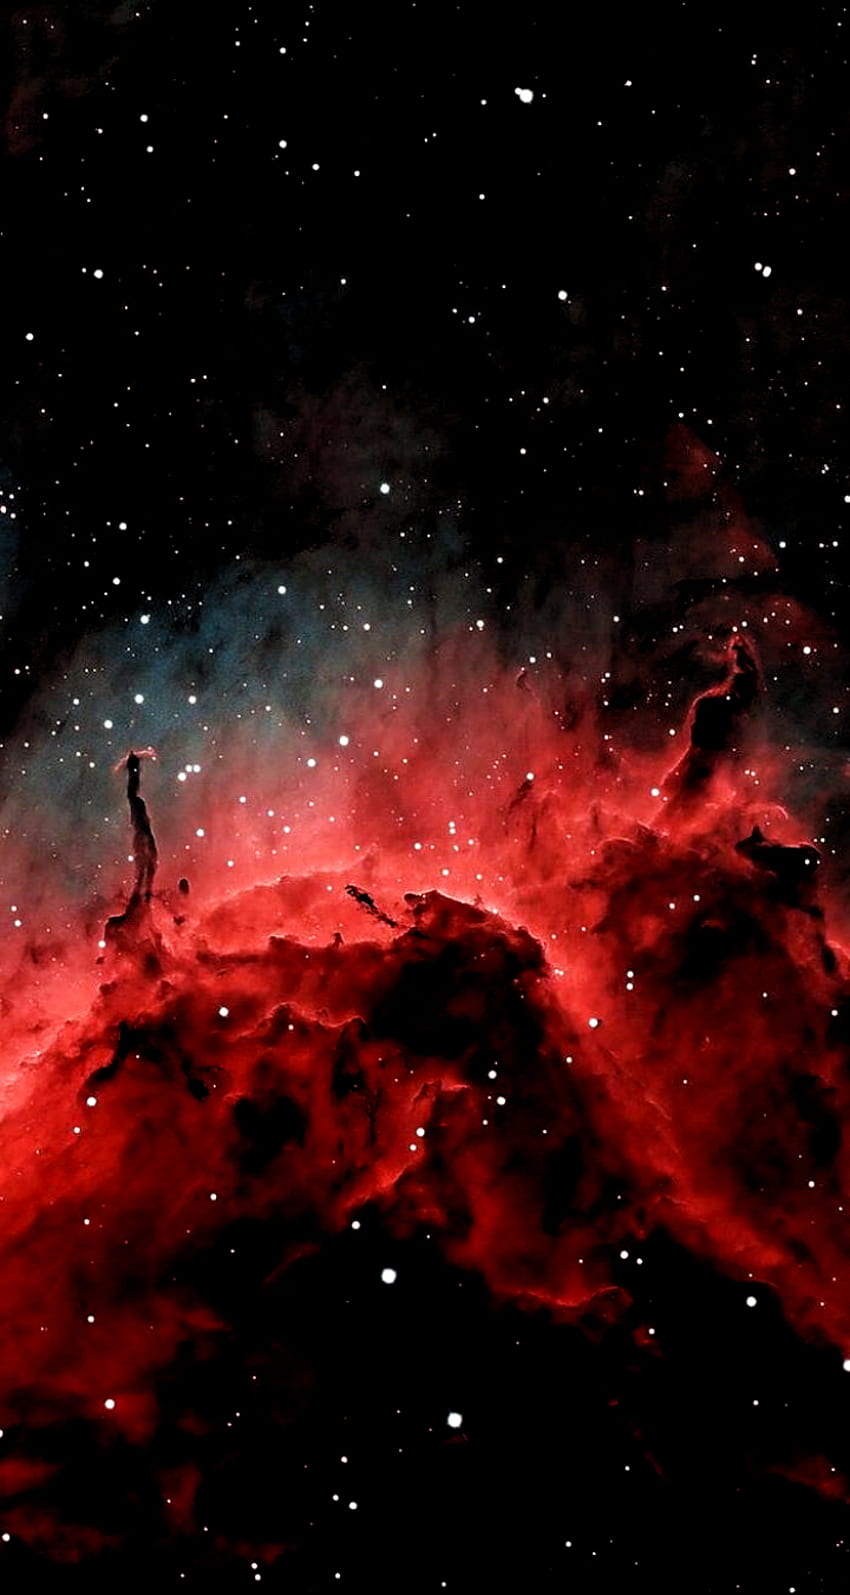 Thẩm mỹ vũ trụ đen đỏ và xám là một chủ đề được yêu thích trong nhiếp ảnh và nghệ thuật. Với sự kết hợp hoàn hảo giữa ba gam màu này, bạn sẽ được đắm mình trong một không gian mang đến cảm giác rất riêng cho riêng mình. Hãy truy cập và khám phá ngay!